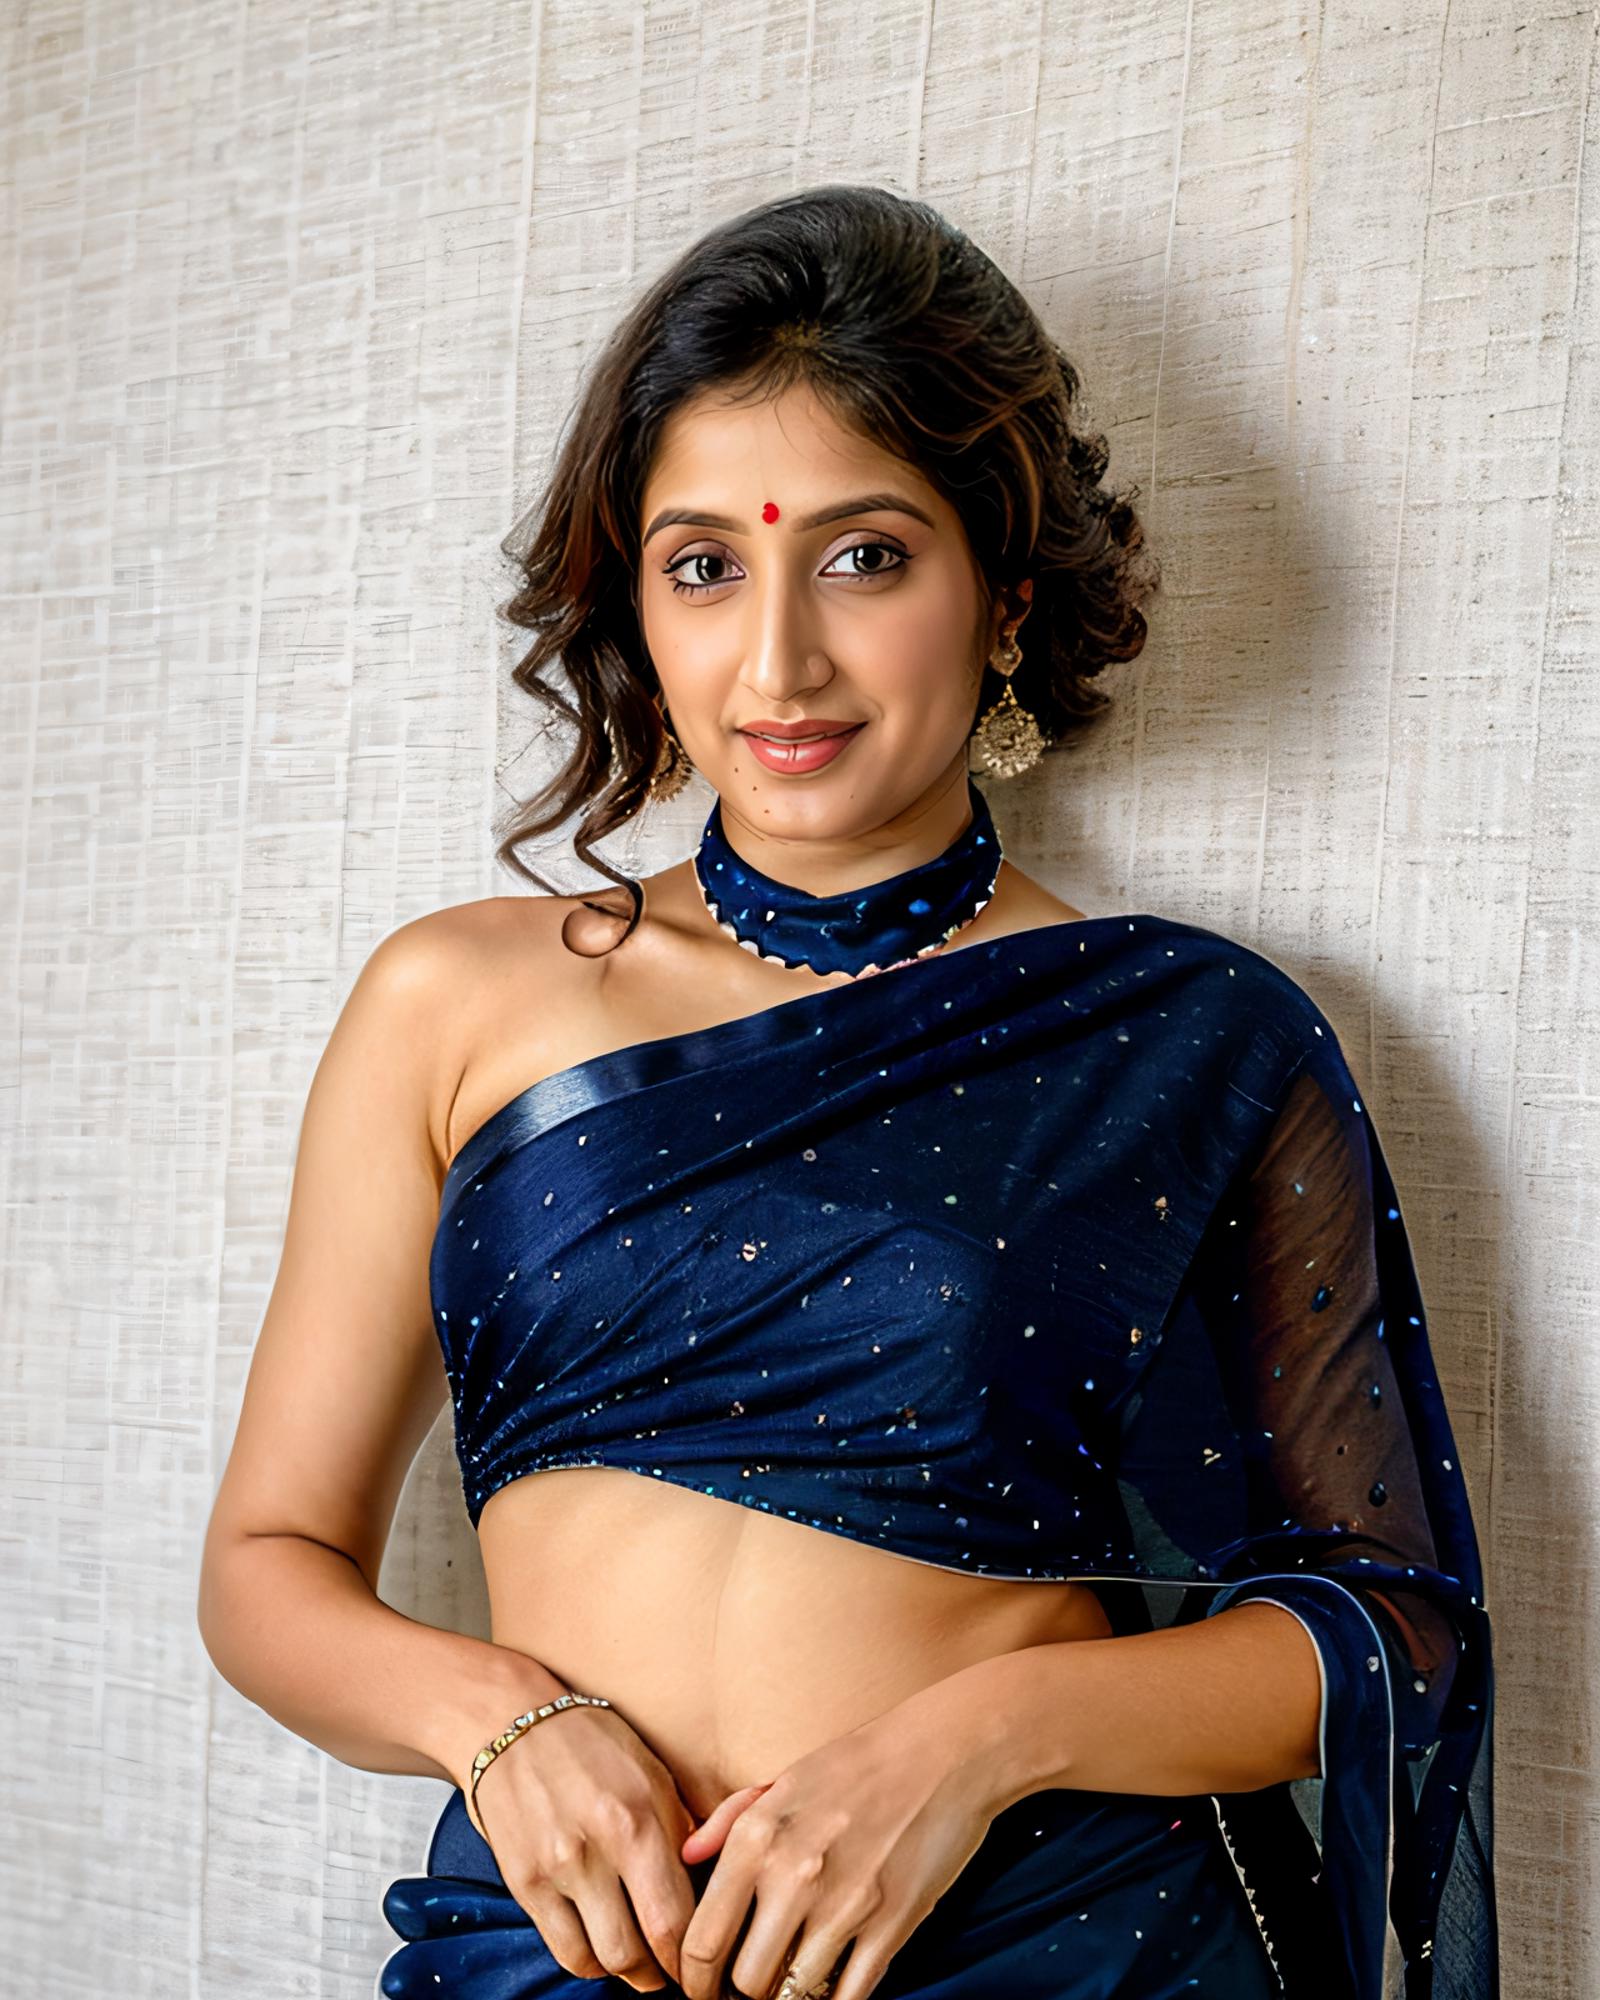 Sagarika Ghatge - Indian Actress/ Model (SD1.5) image by Desi_Cafe